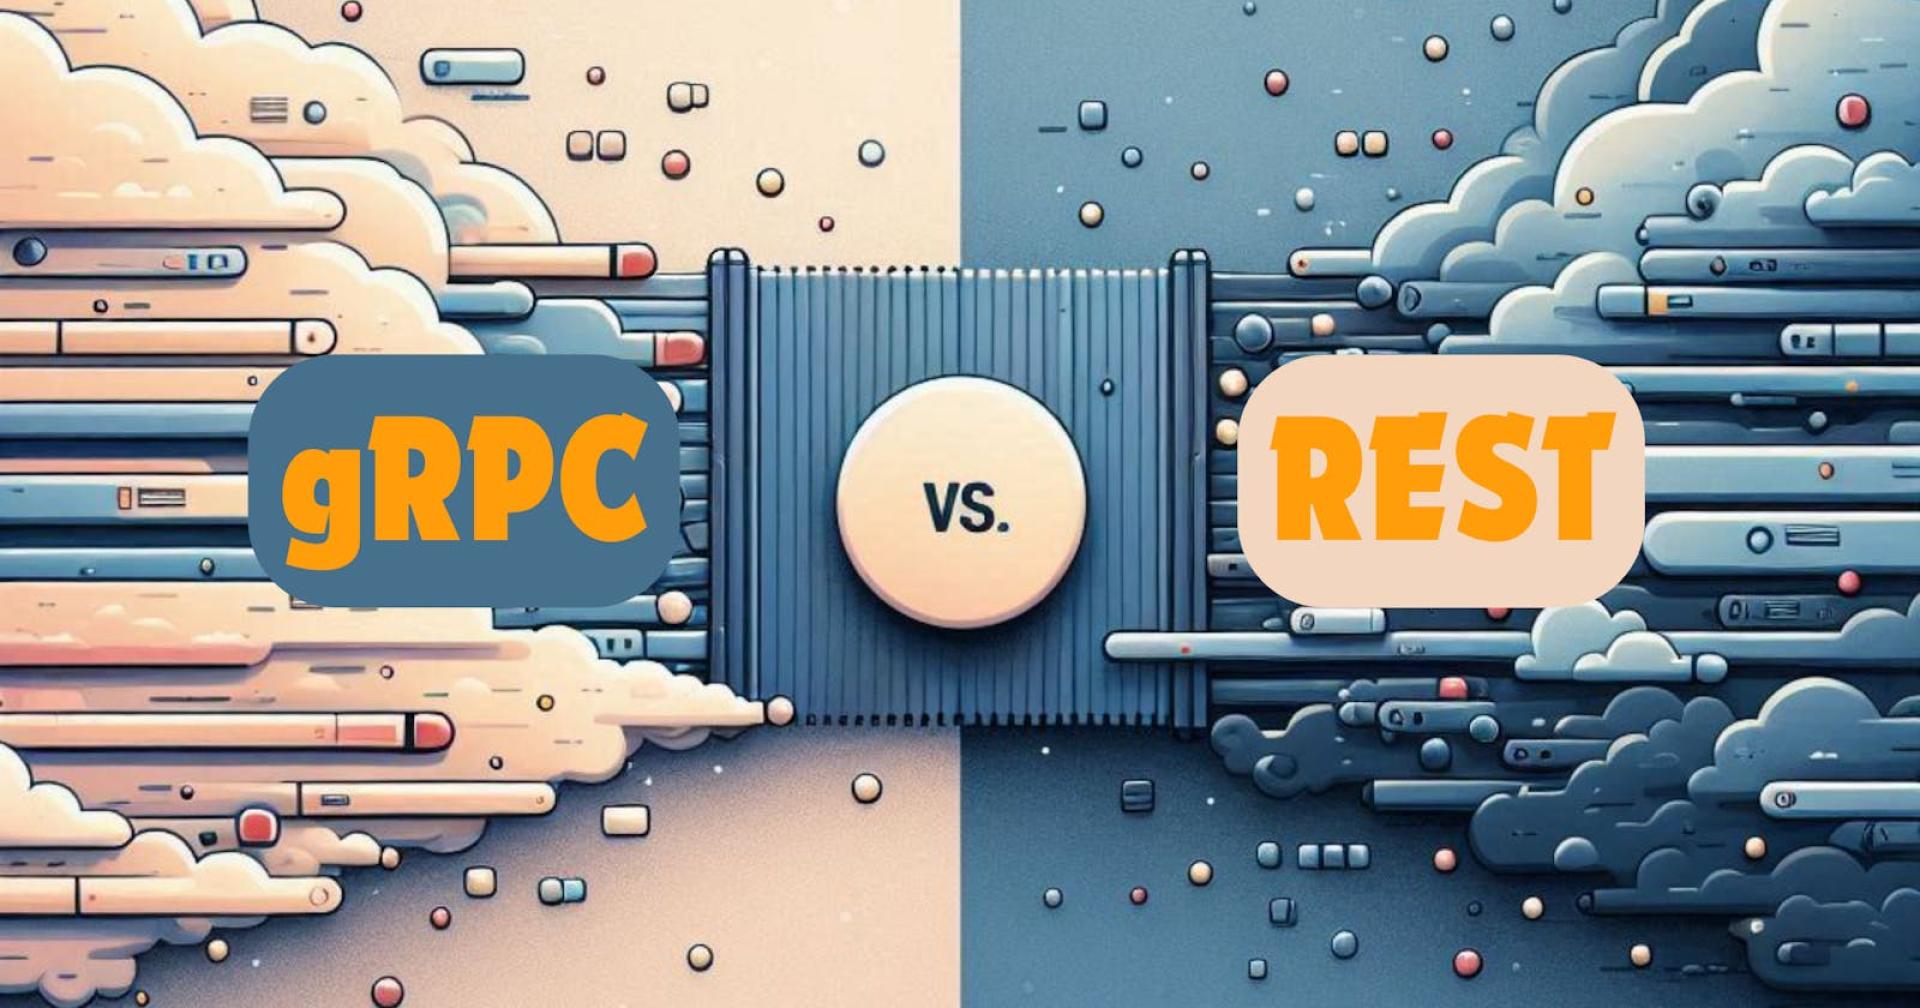 gRPC vs REST performance comparison